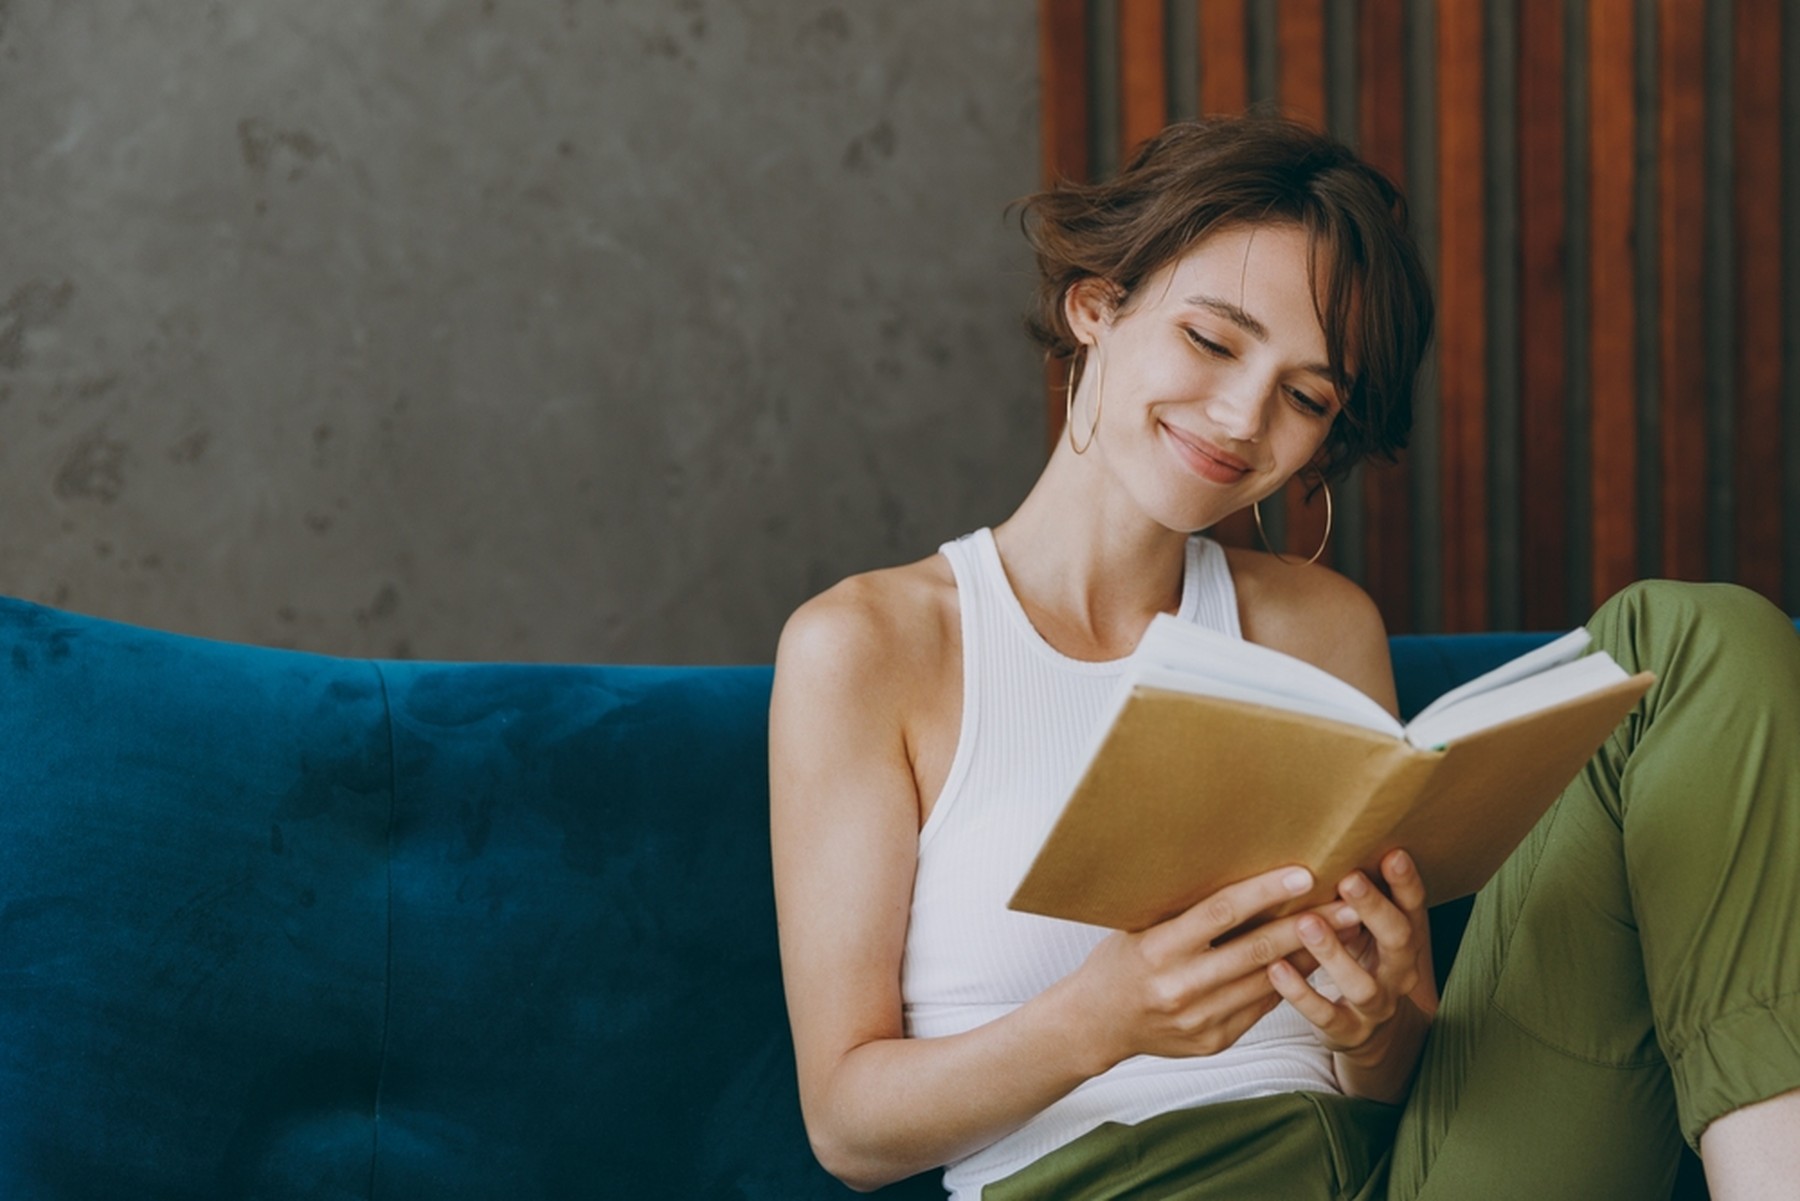 Mujer joven con el pelo corto leyendo un libro con la portada marrón. Está sentada en un sofá de terciopelo azul y sonríe.